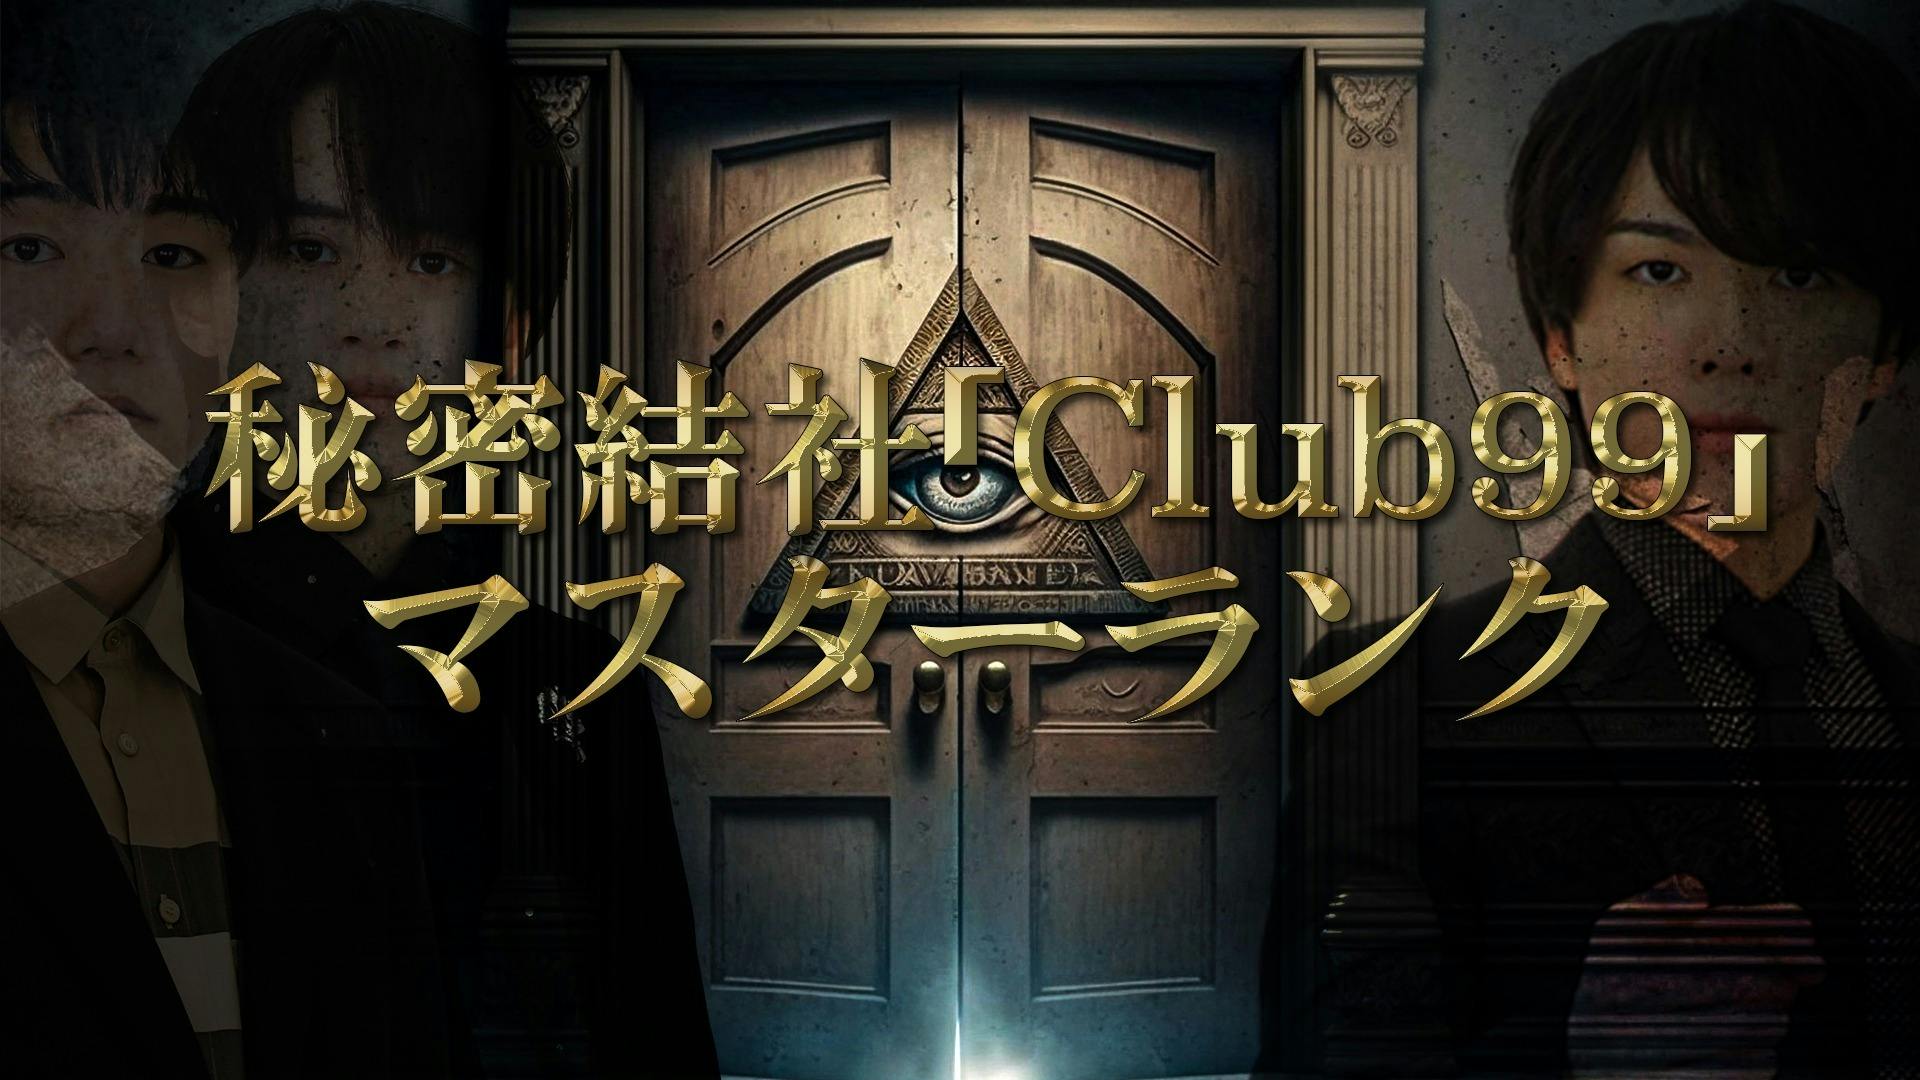 ウマヅラビデオ - 秘密結社「Club99」 マスターランク - DMMオンラインサロン